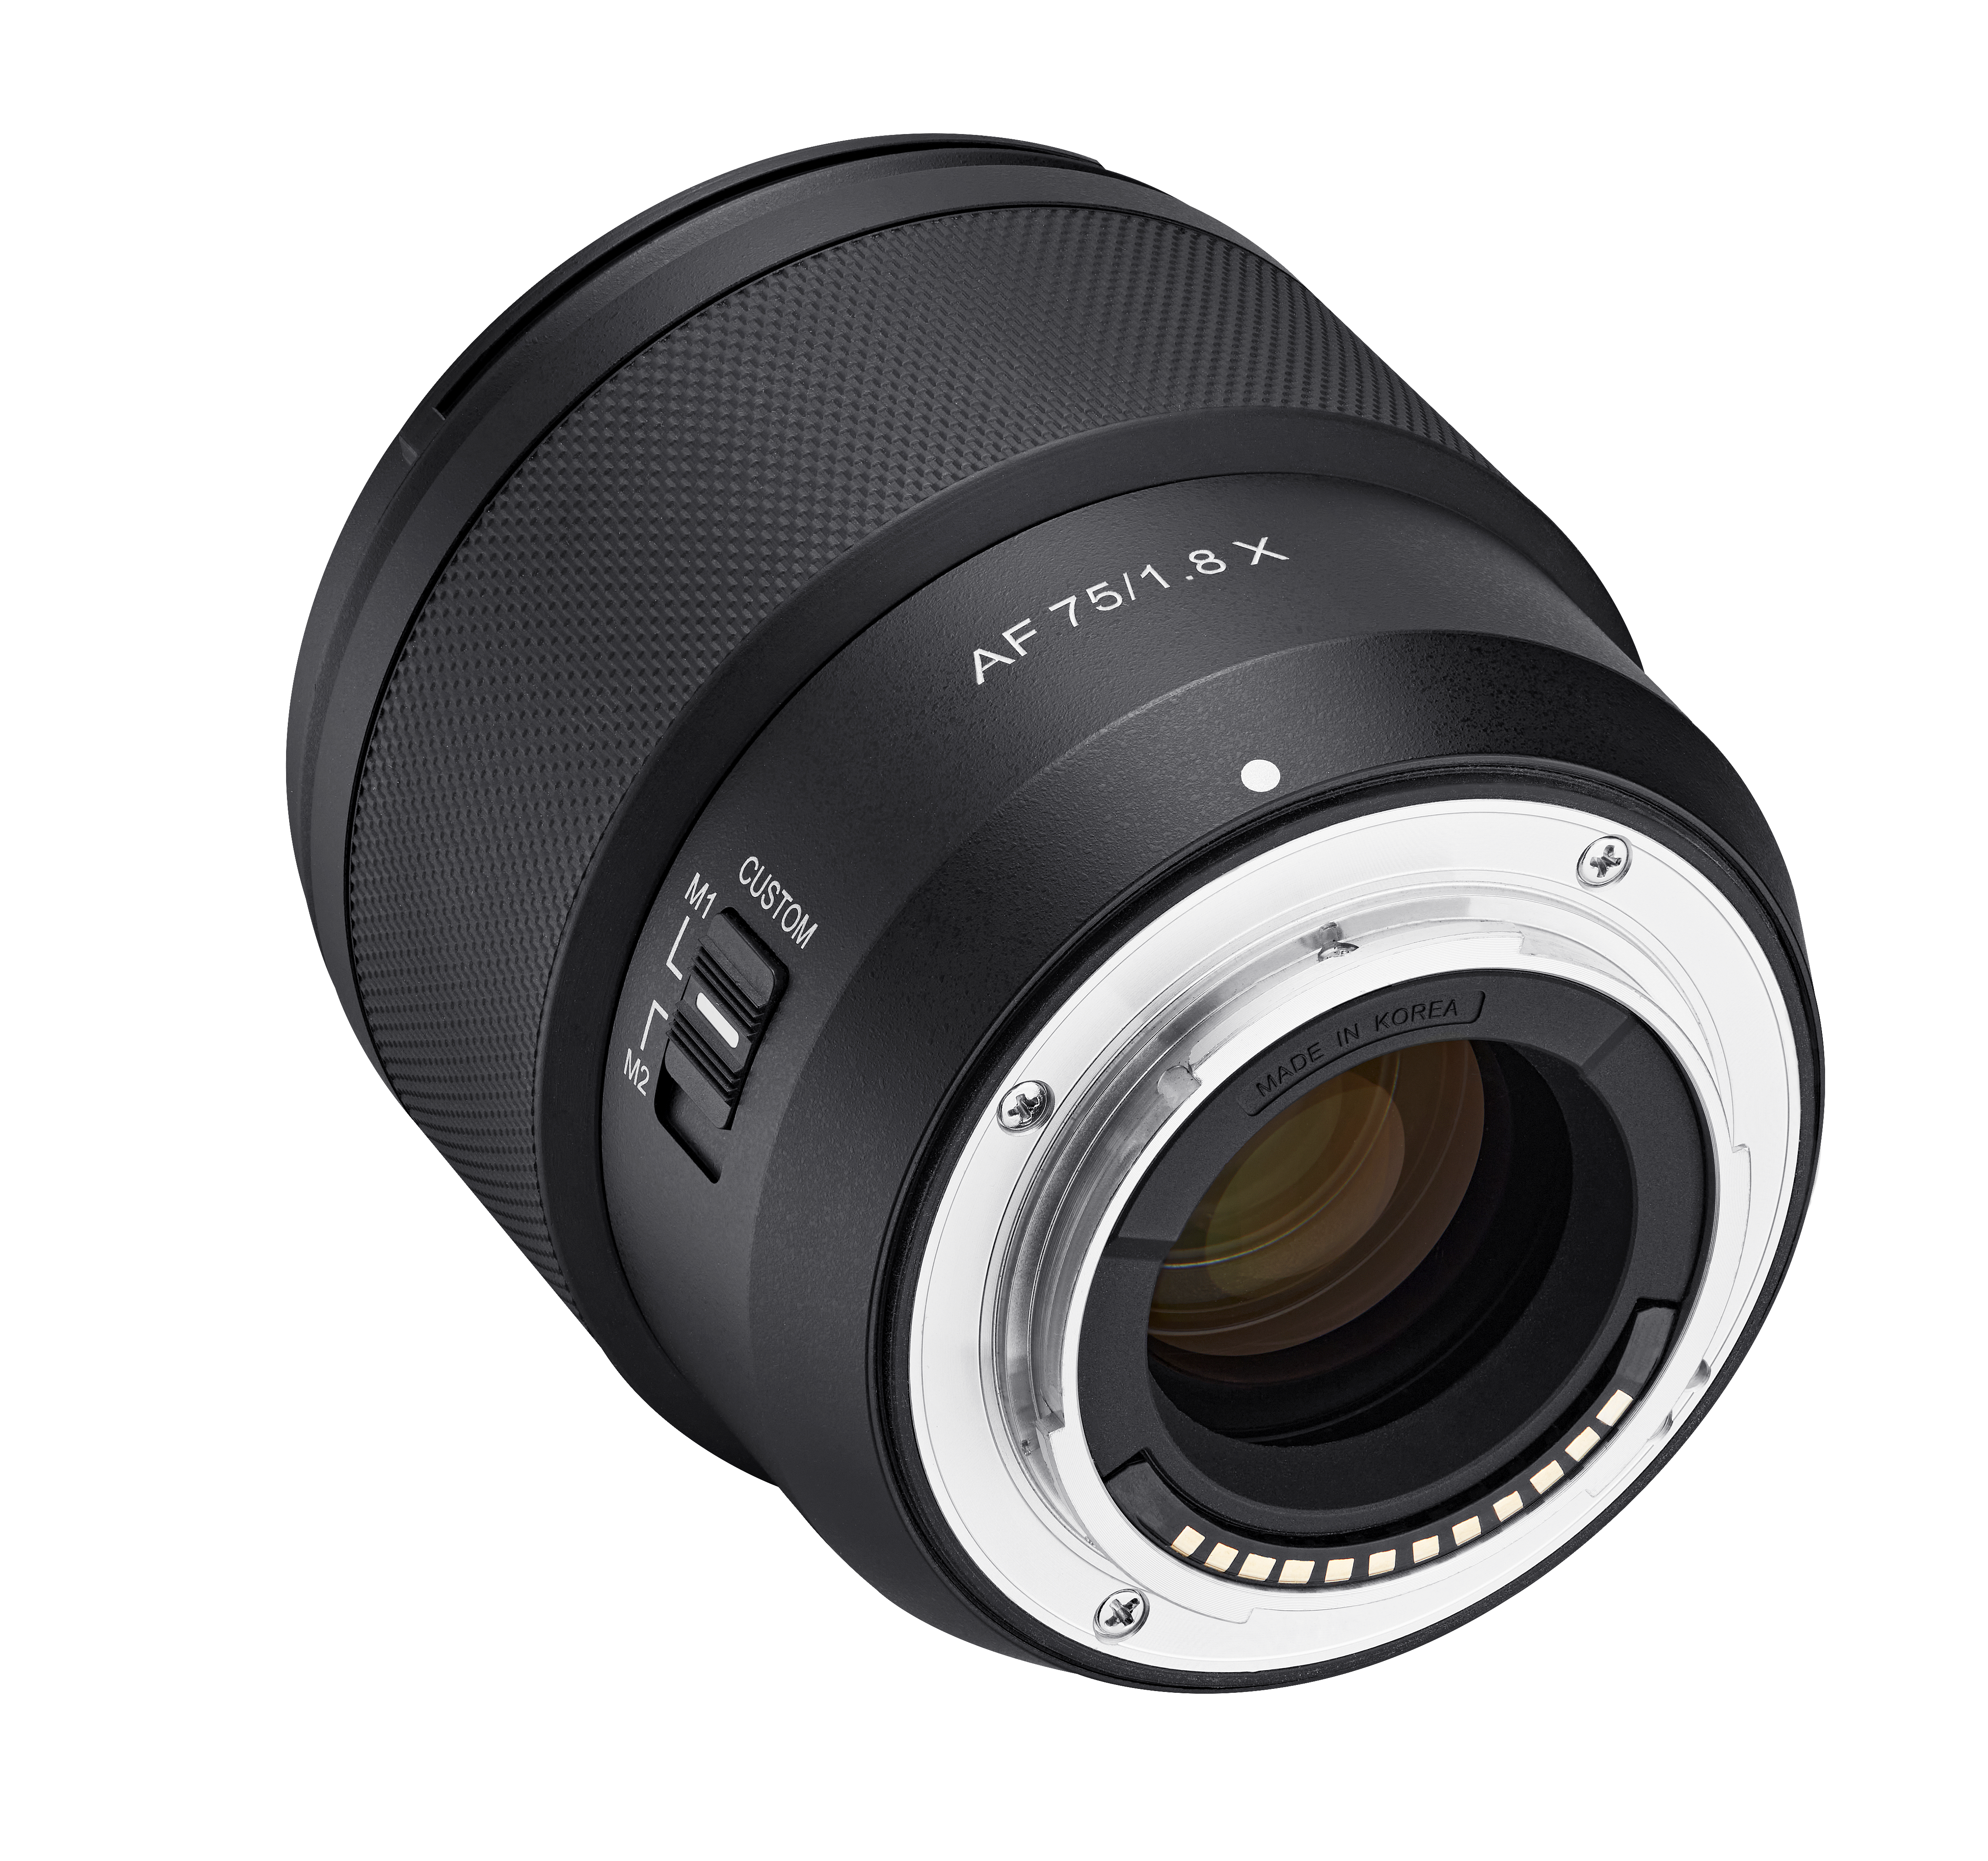 Samyang AF 75mm F1.8 lens for Fuji X